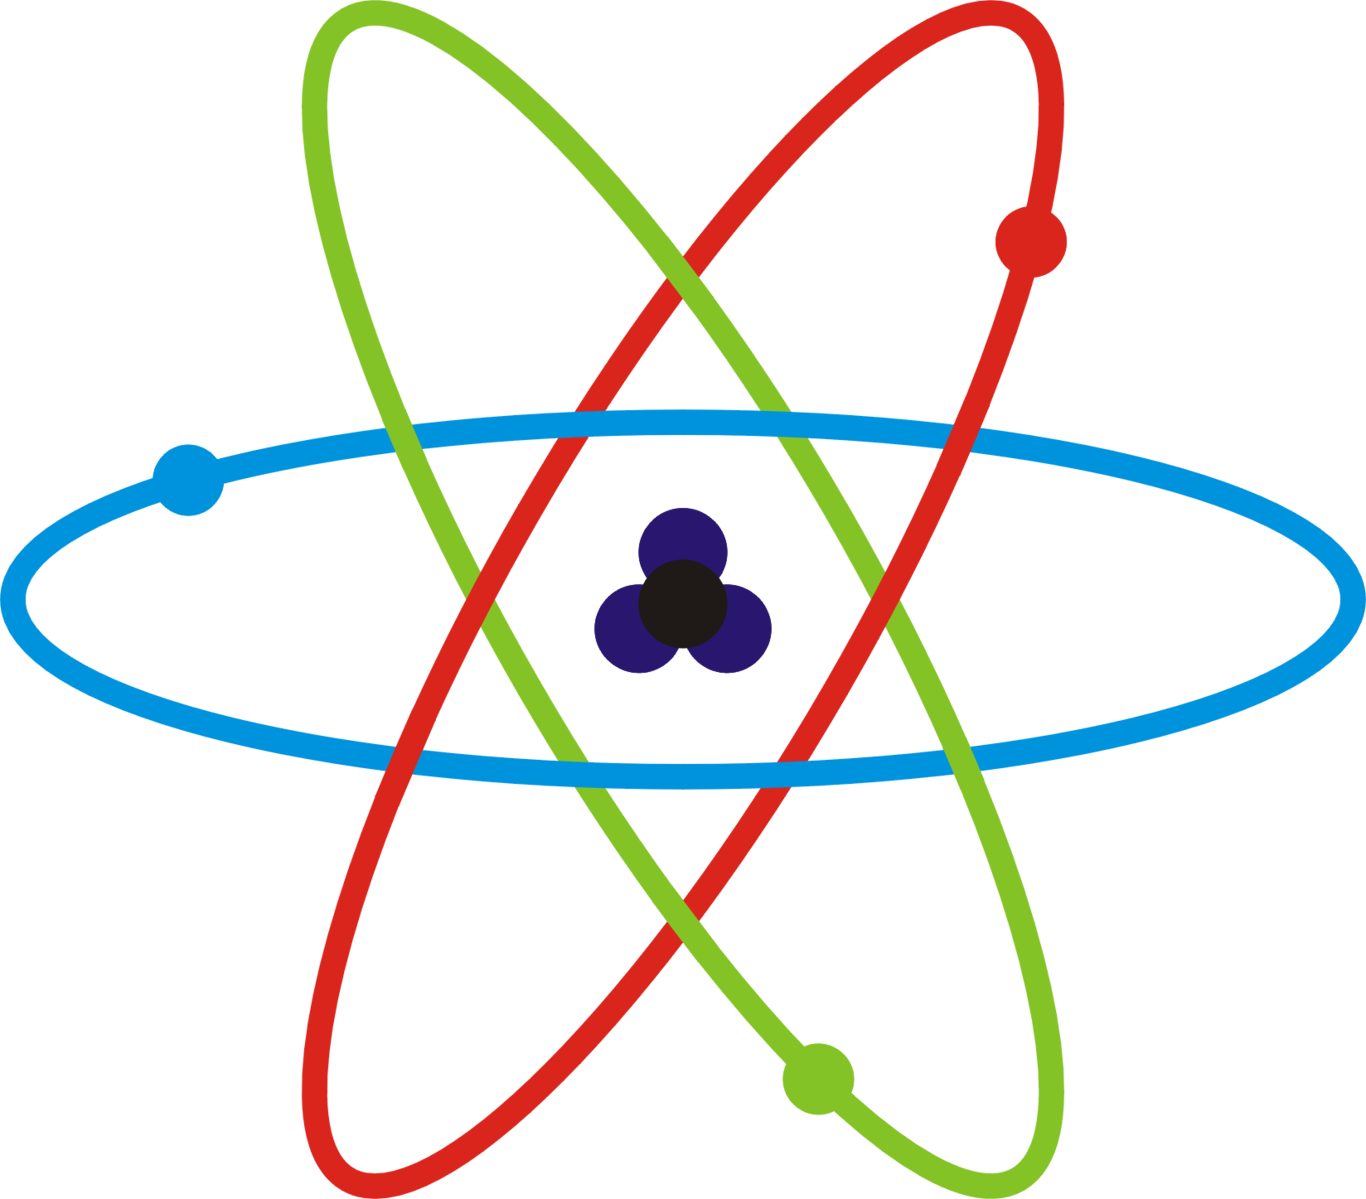 Как нарисовать атом